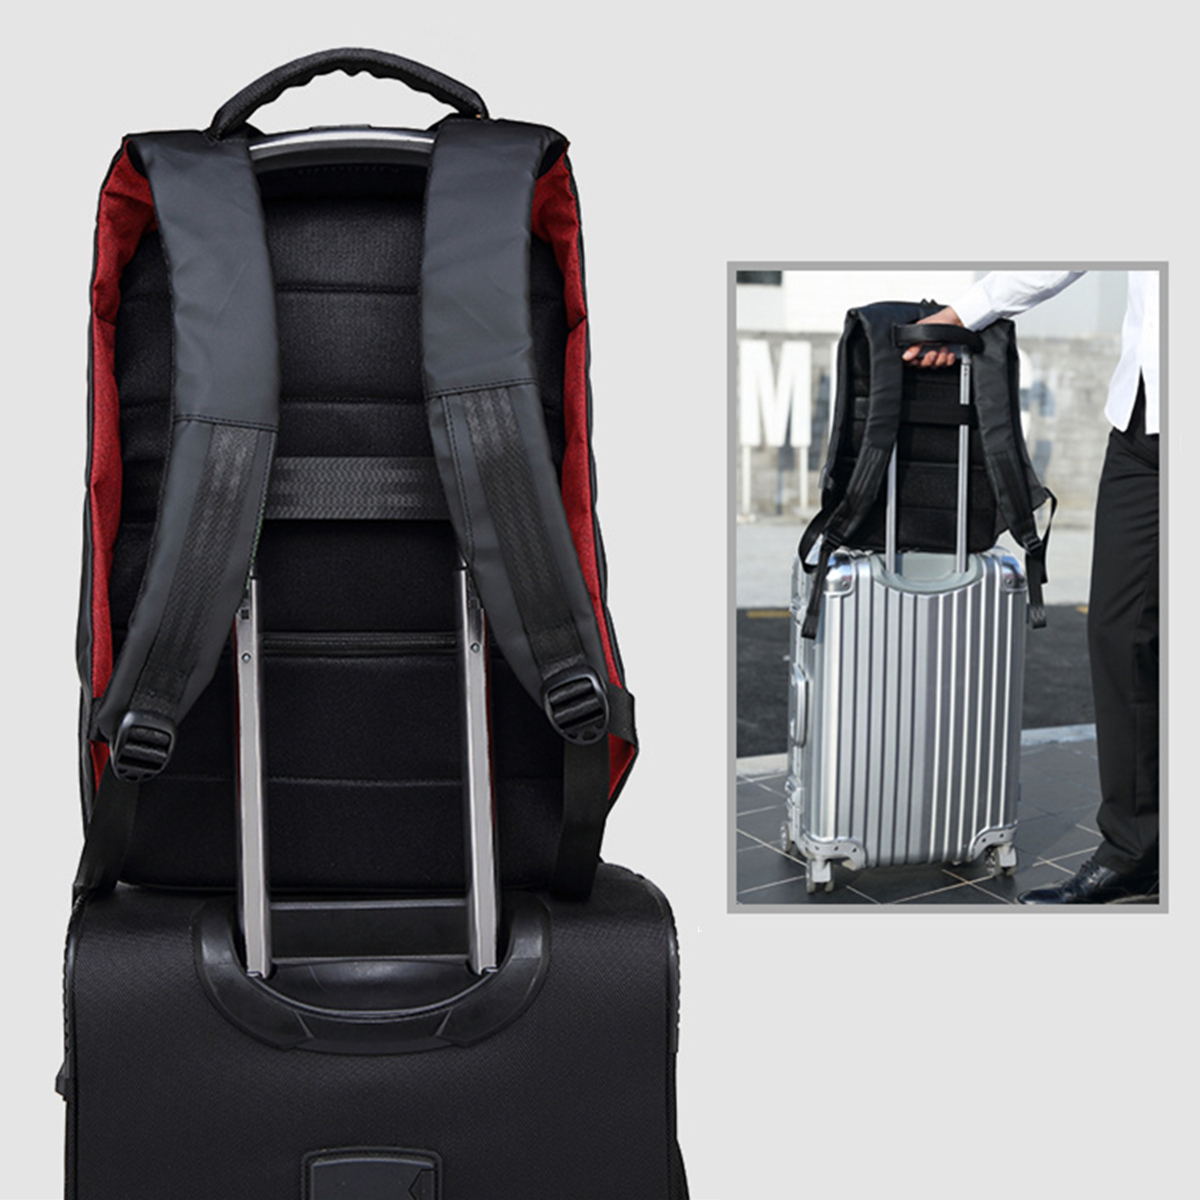 156-Inch-Laptop-Backpack-Bag-Travel-Bag-Student-Bag-With-External-USB-Charging-Port-1288885